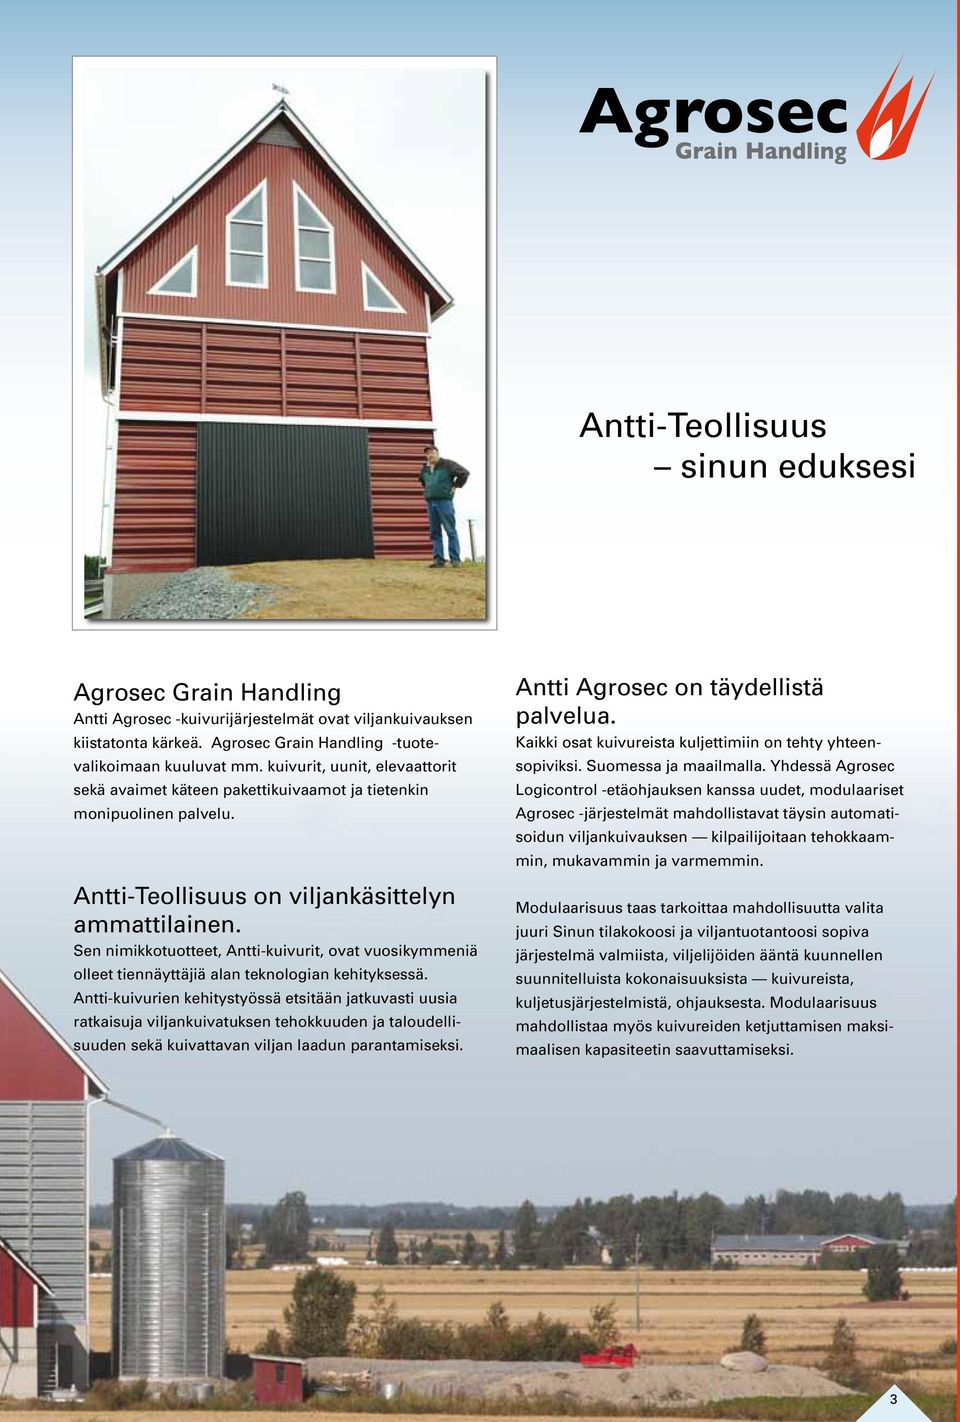 Sen nimikkotuotteet, Antti-kuivurit, ovat vuosikymmeniä olleet tiennäyttäjiä alan teknologian kehityksessä.